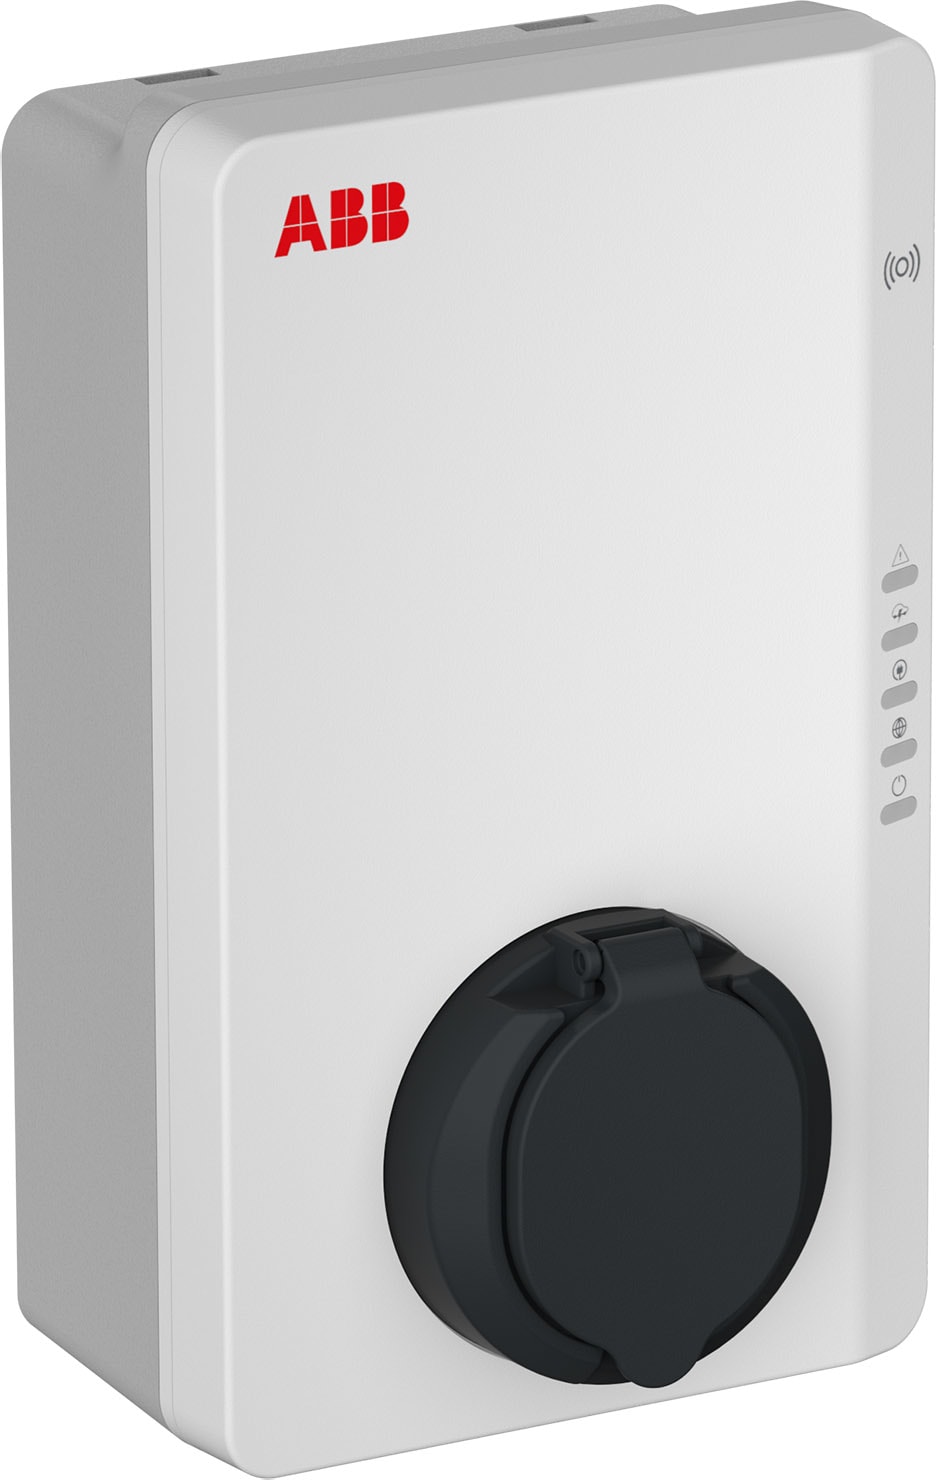 ABB - Terra AC Wallbox 4 kW RFID